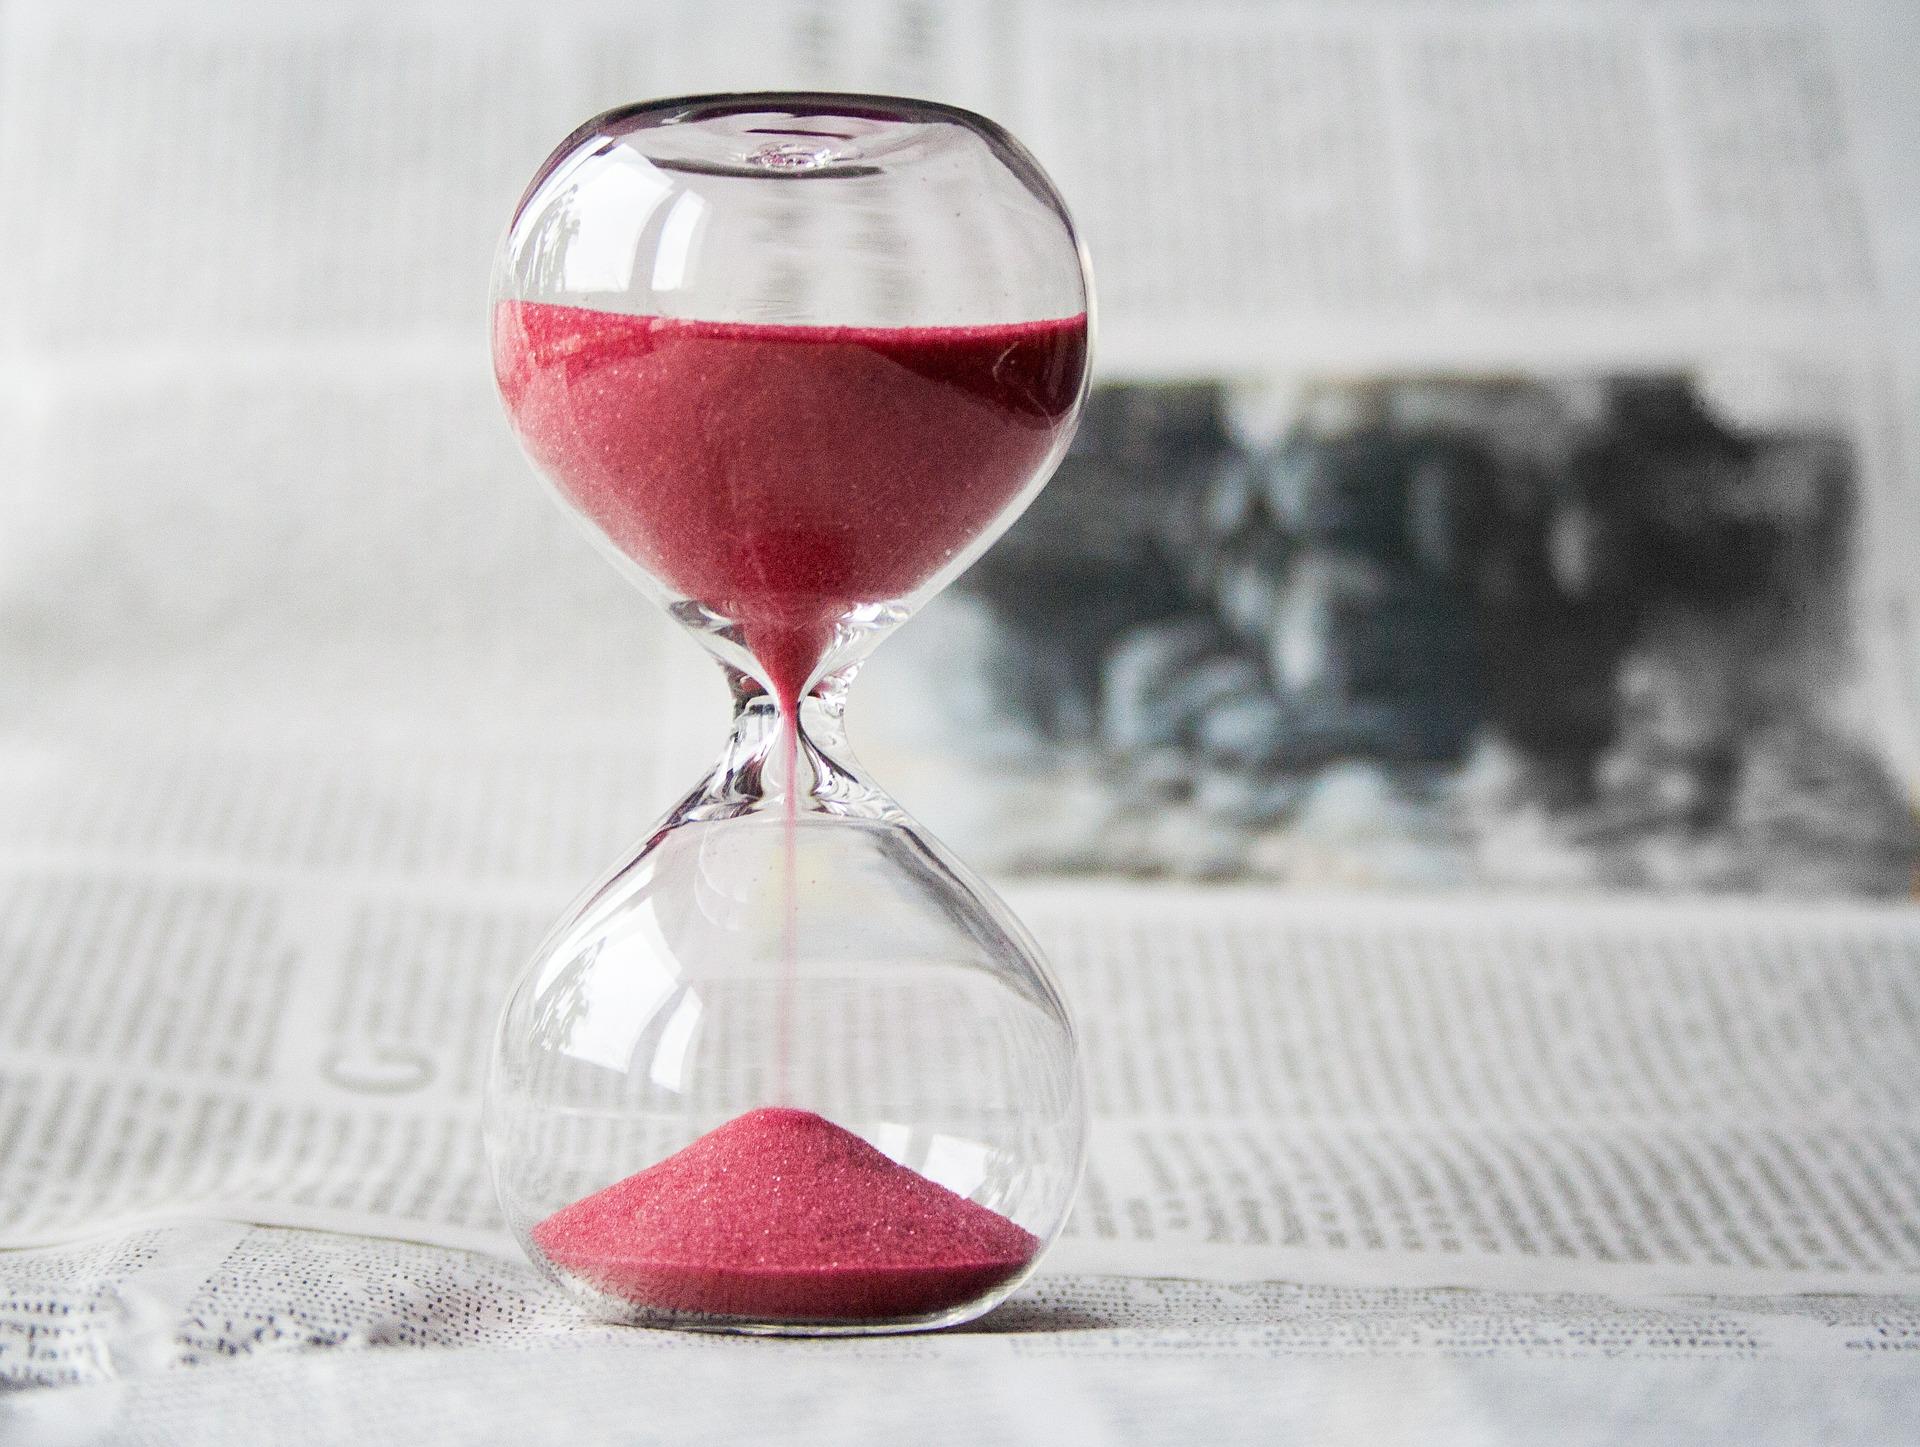 Imagen de un reloj de arena midiendo un periodo de tiempo